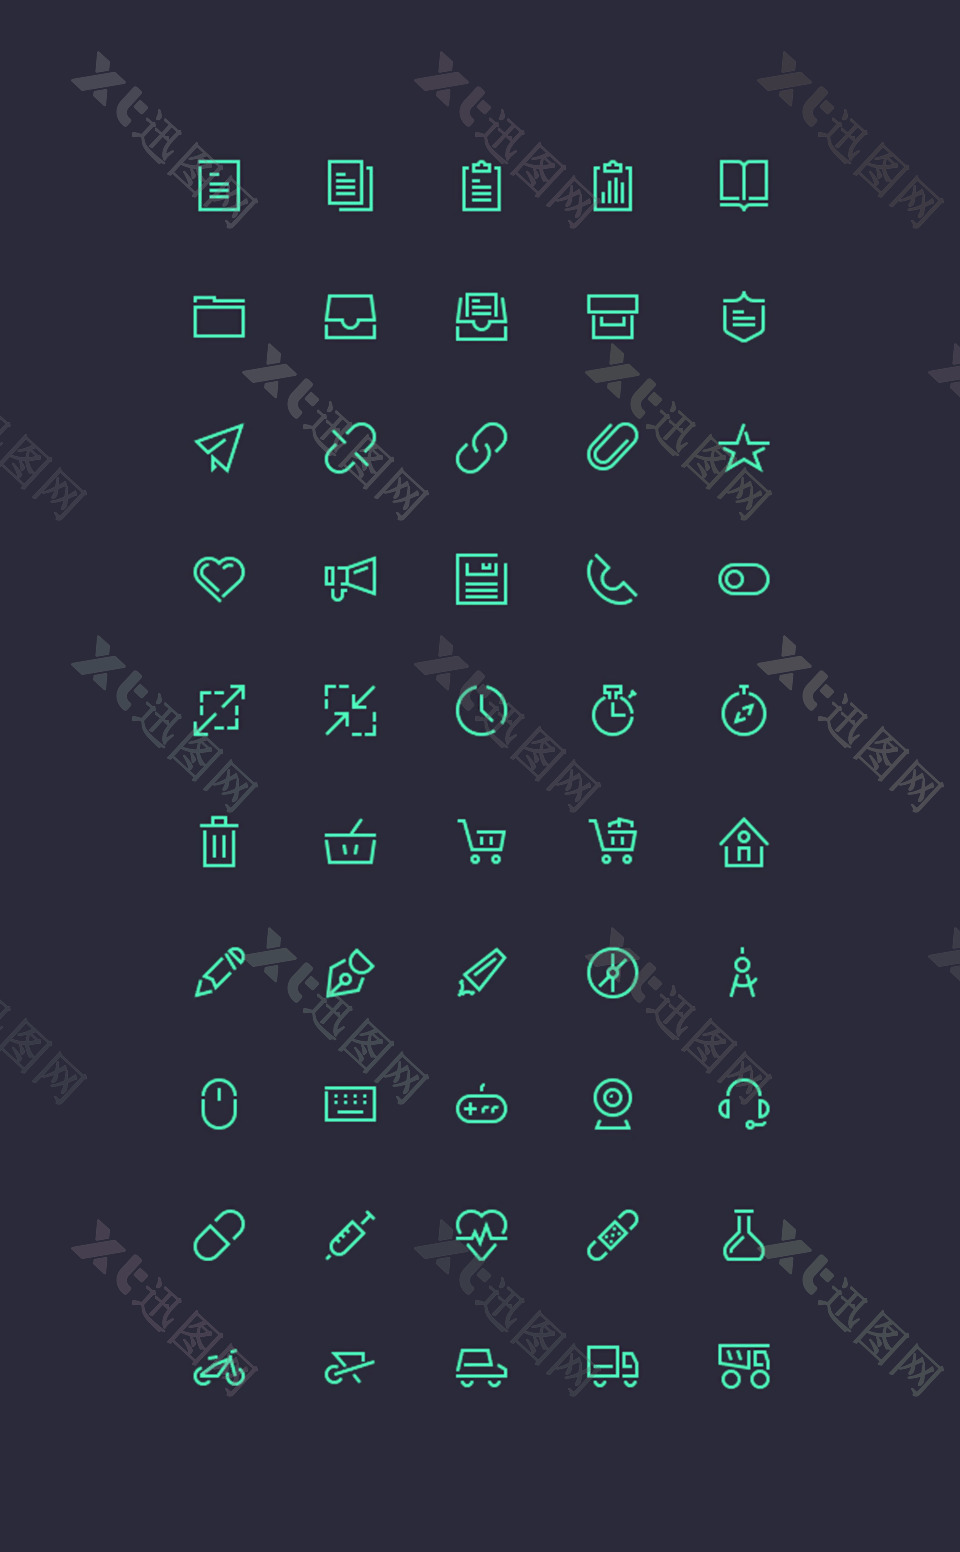 icons扁平化图